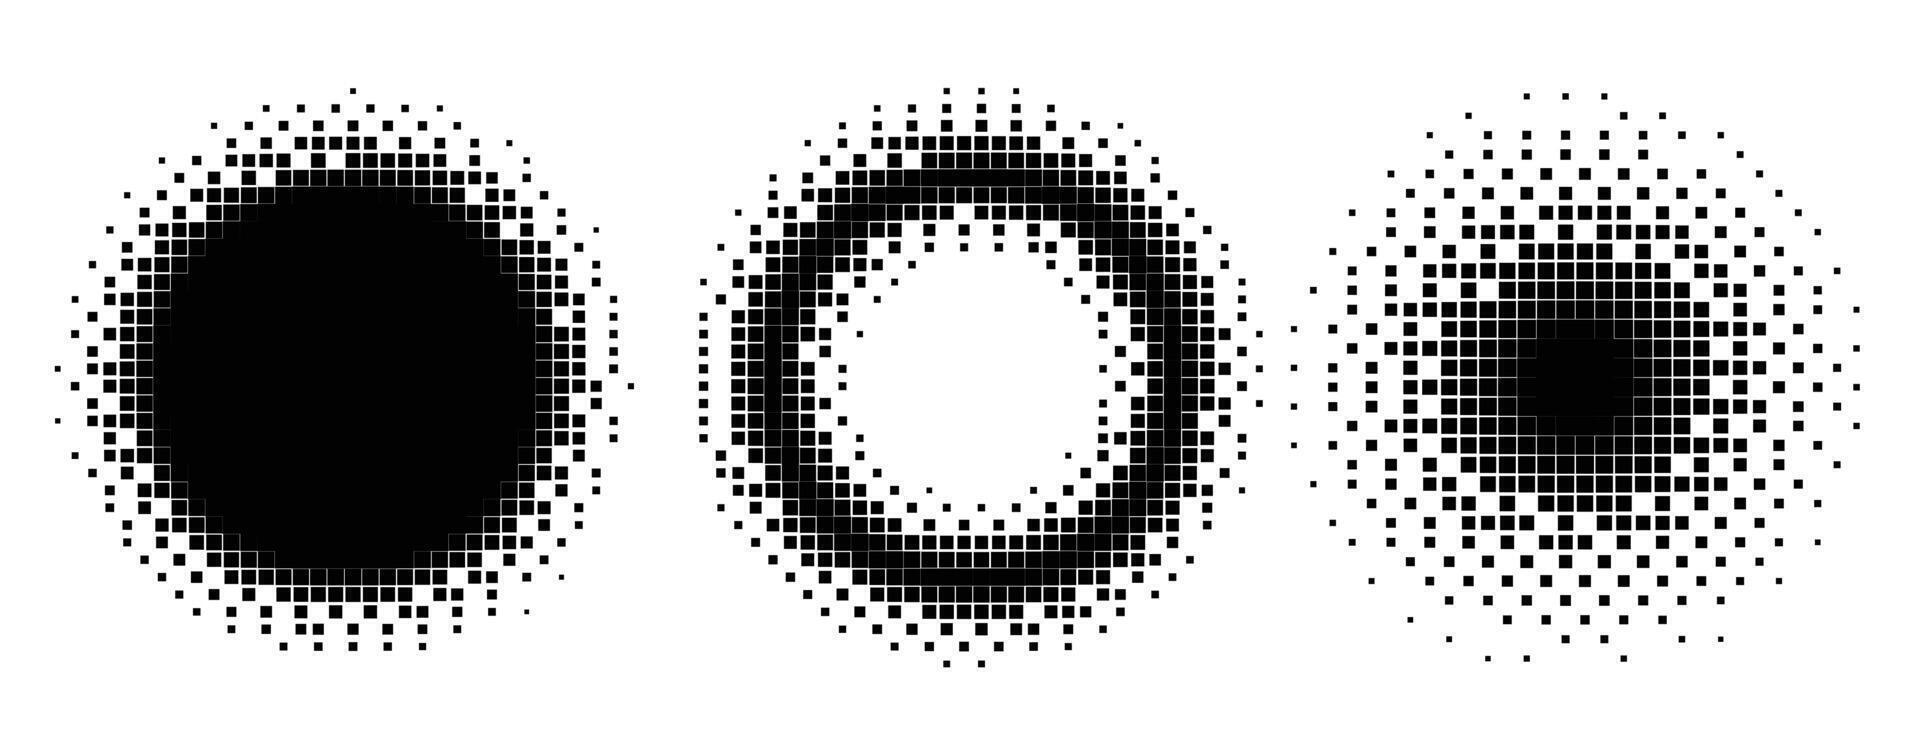 píxel círculos y marcos trama de semitonos estilo conjunto vector